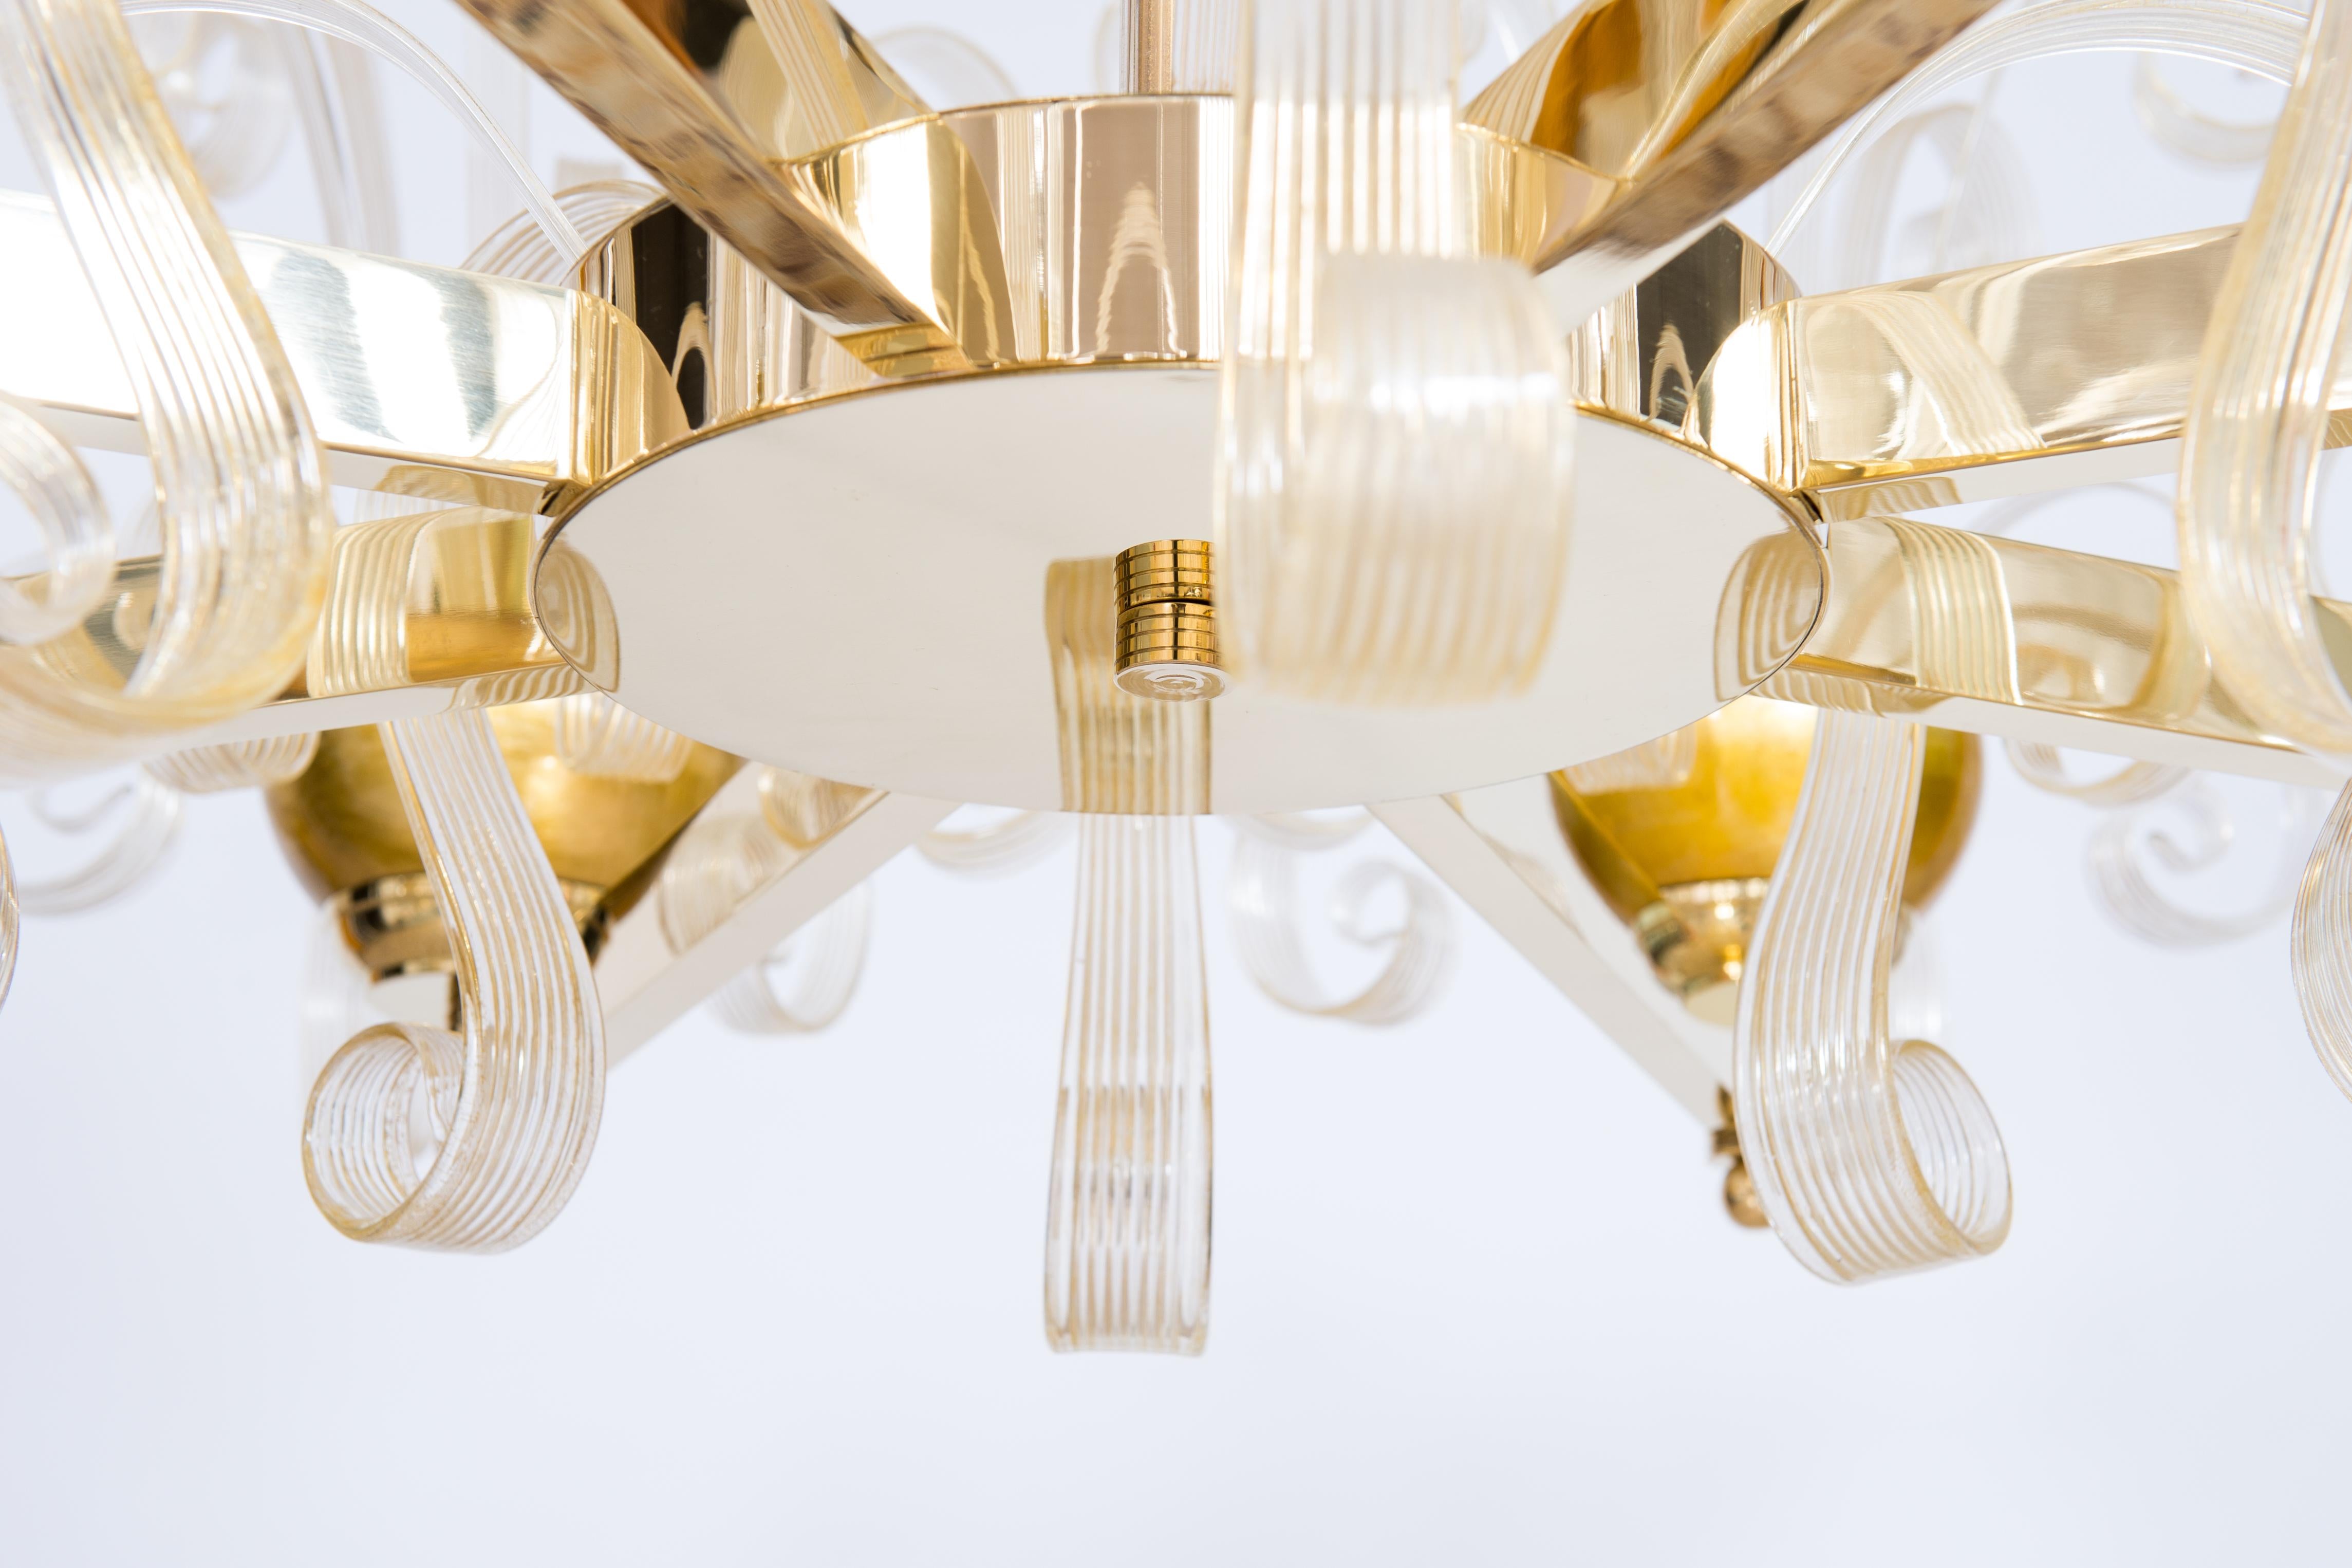 Brass Rare Gold Murano Glass Chandelier Gold Pastorals Giovanni Dalla Fina Italy 21st For Sale